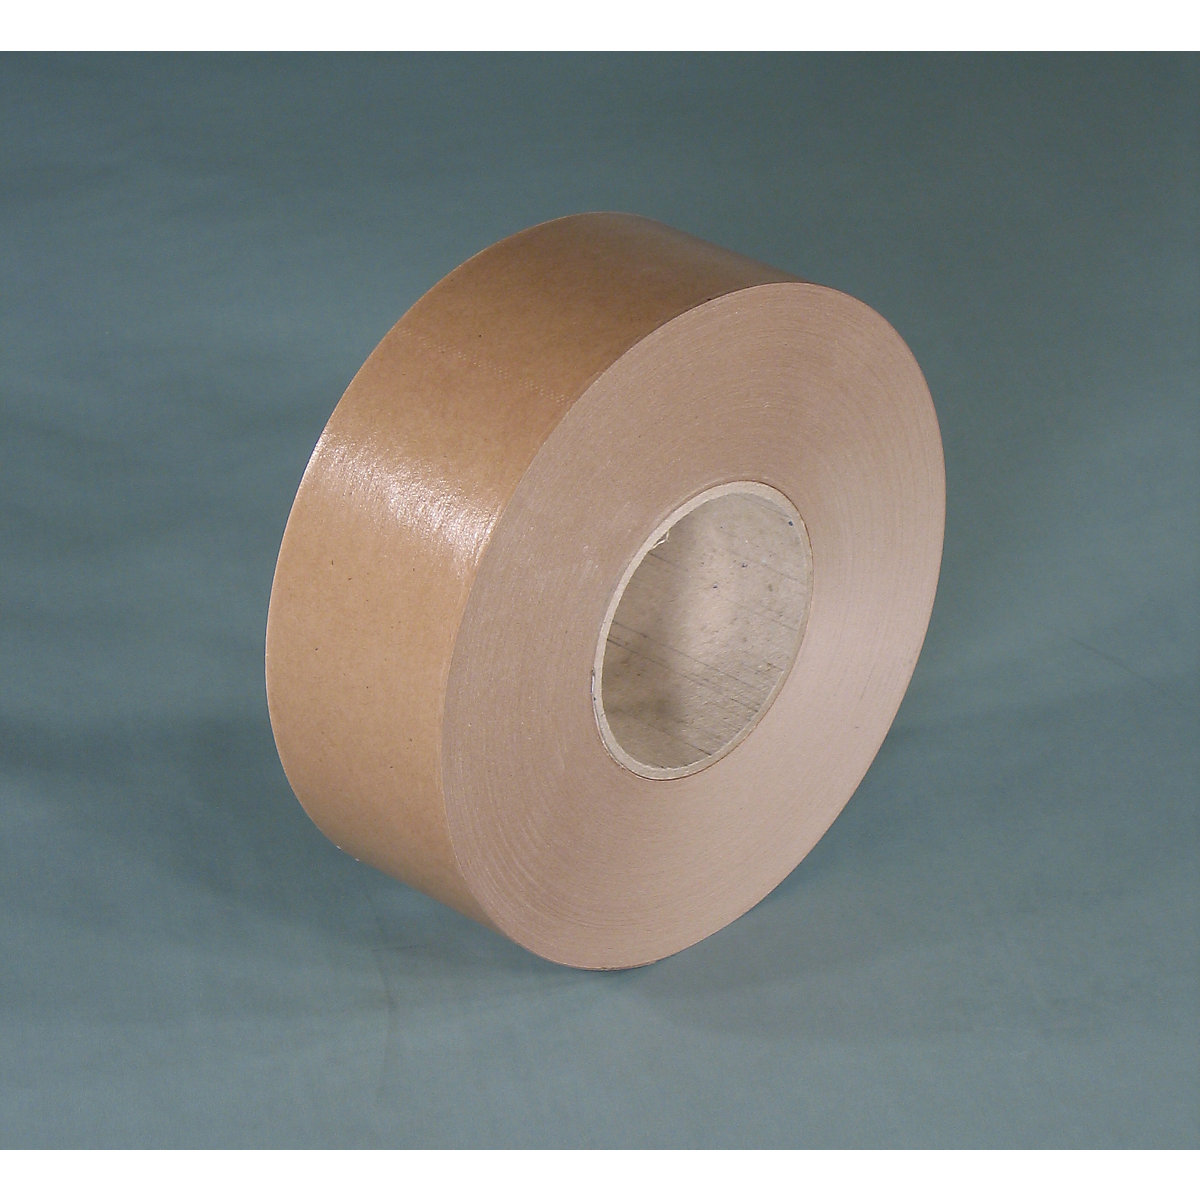 Gummed tape – eurokraft basic, basic model, pack of 12 rolls, brown, tape width 60 mm-1